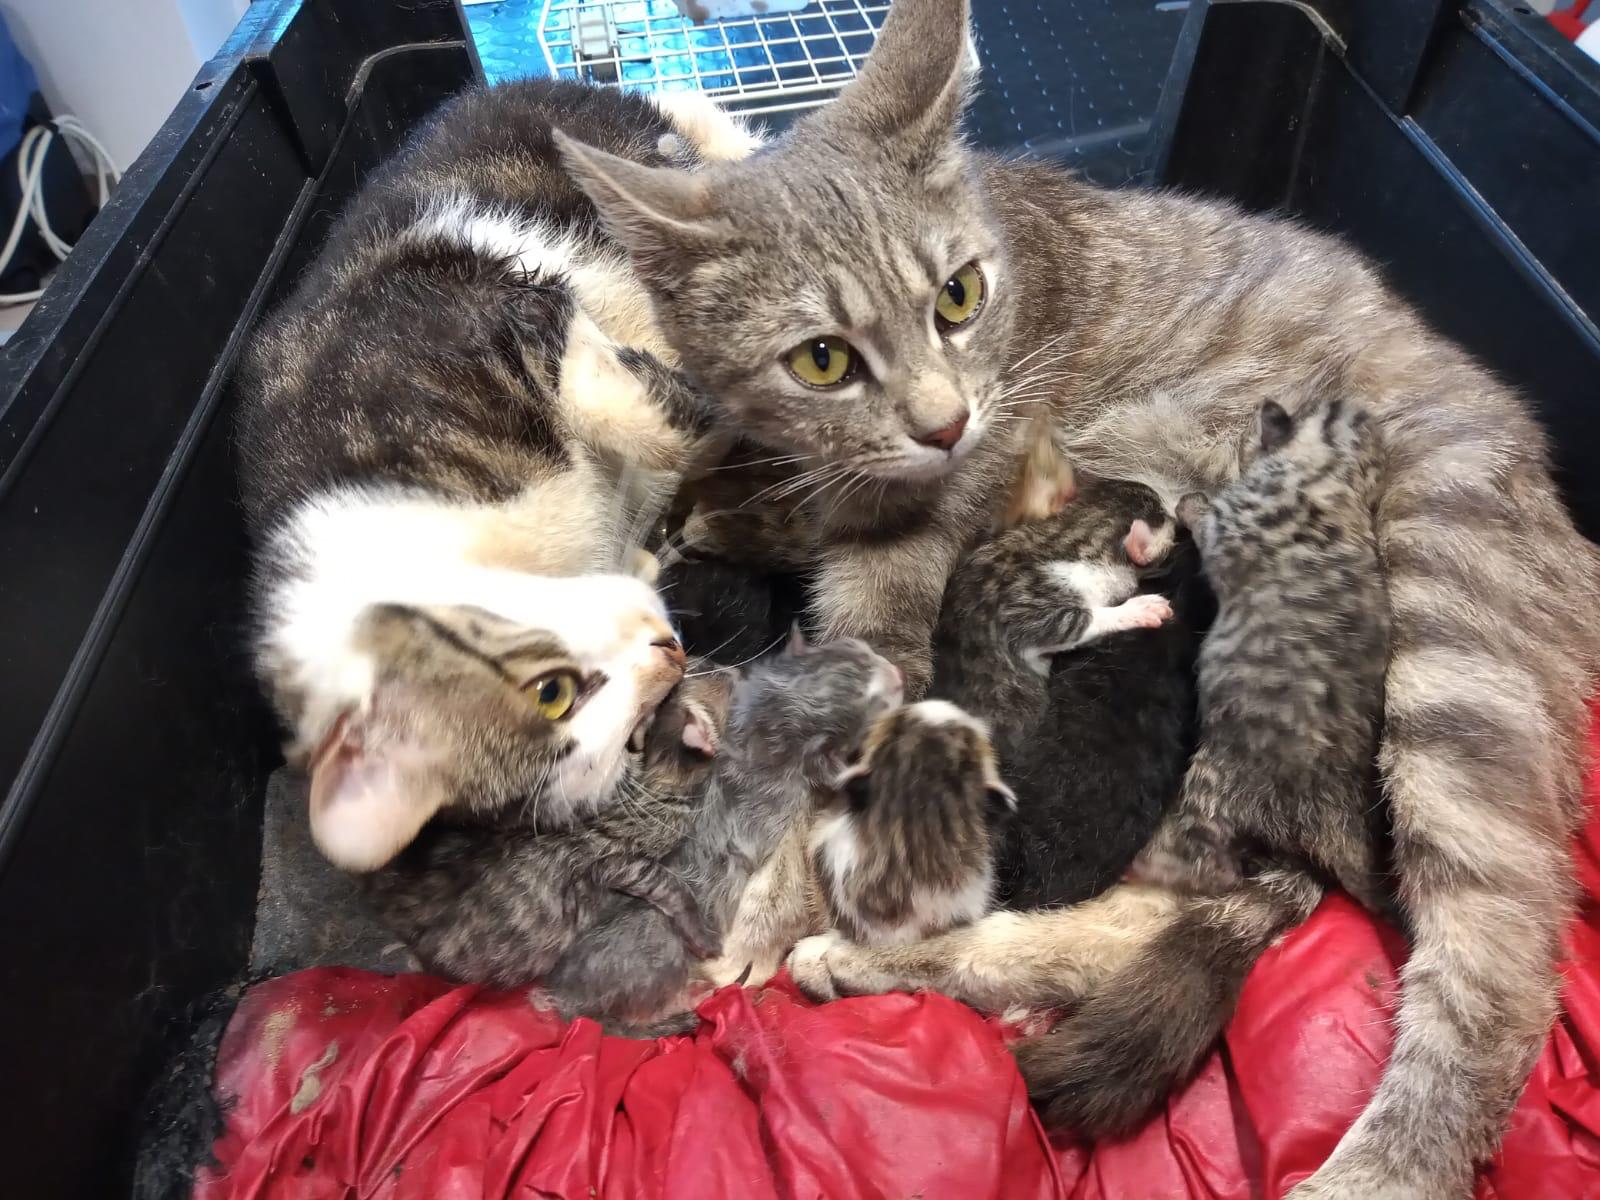 NICHELINO – Dodici gattini abbandonati a bordo strada: salvati